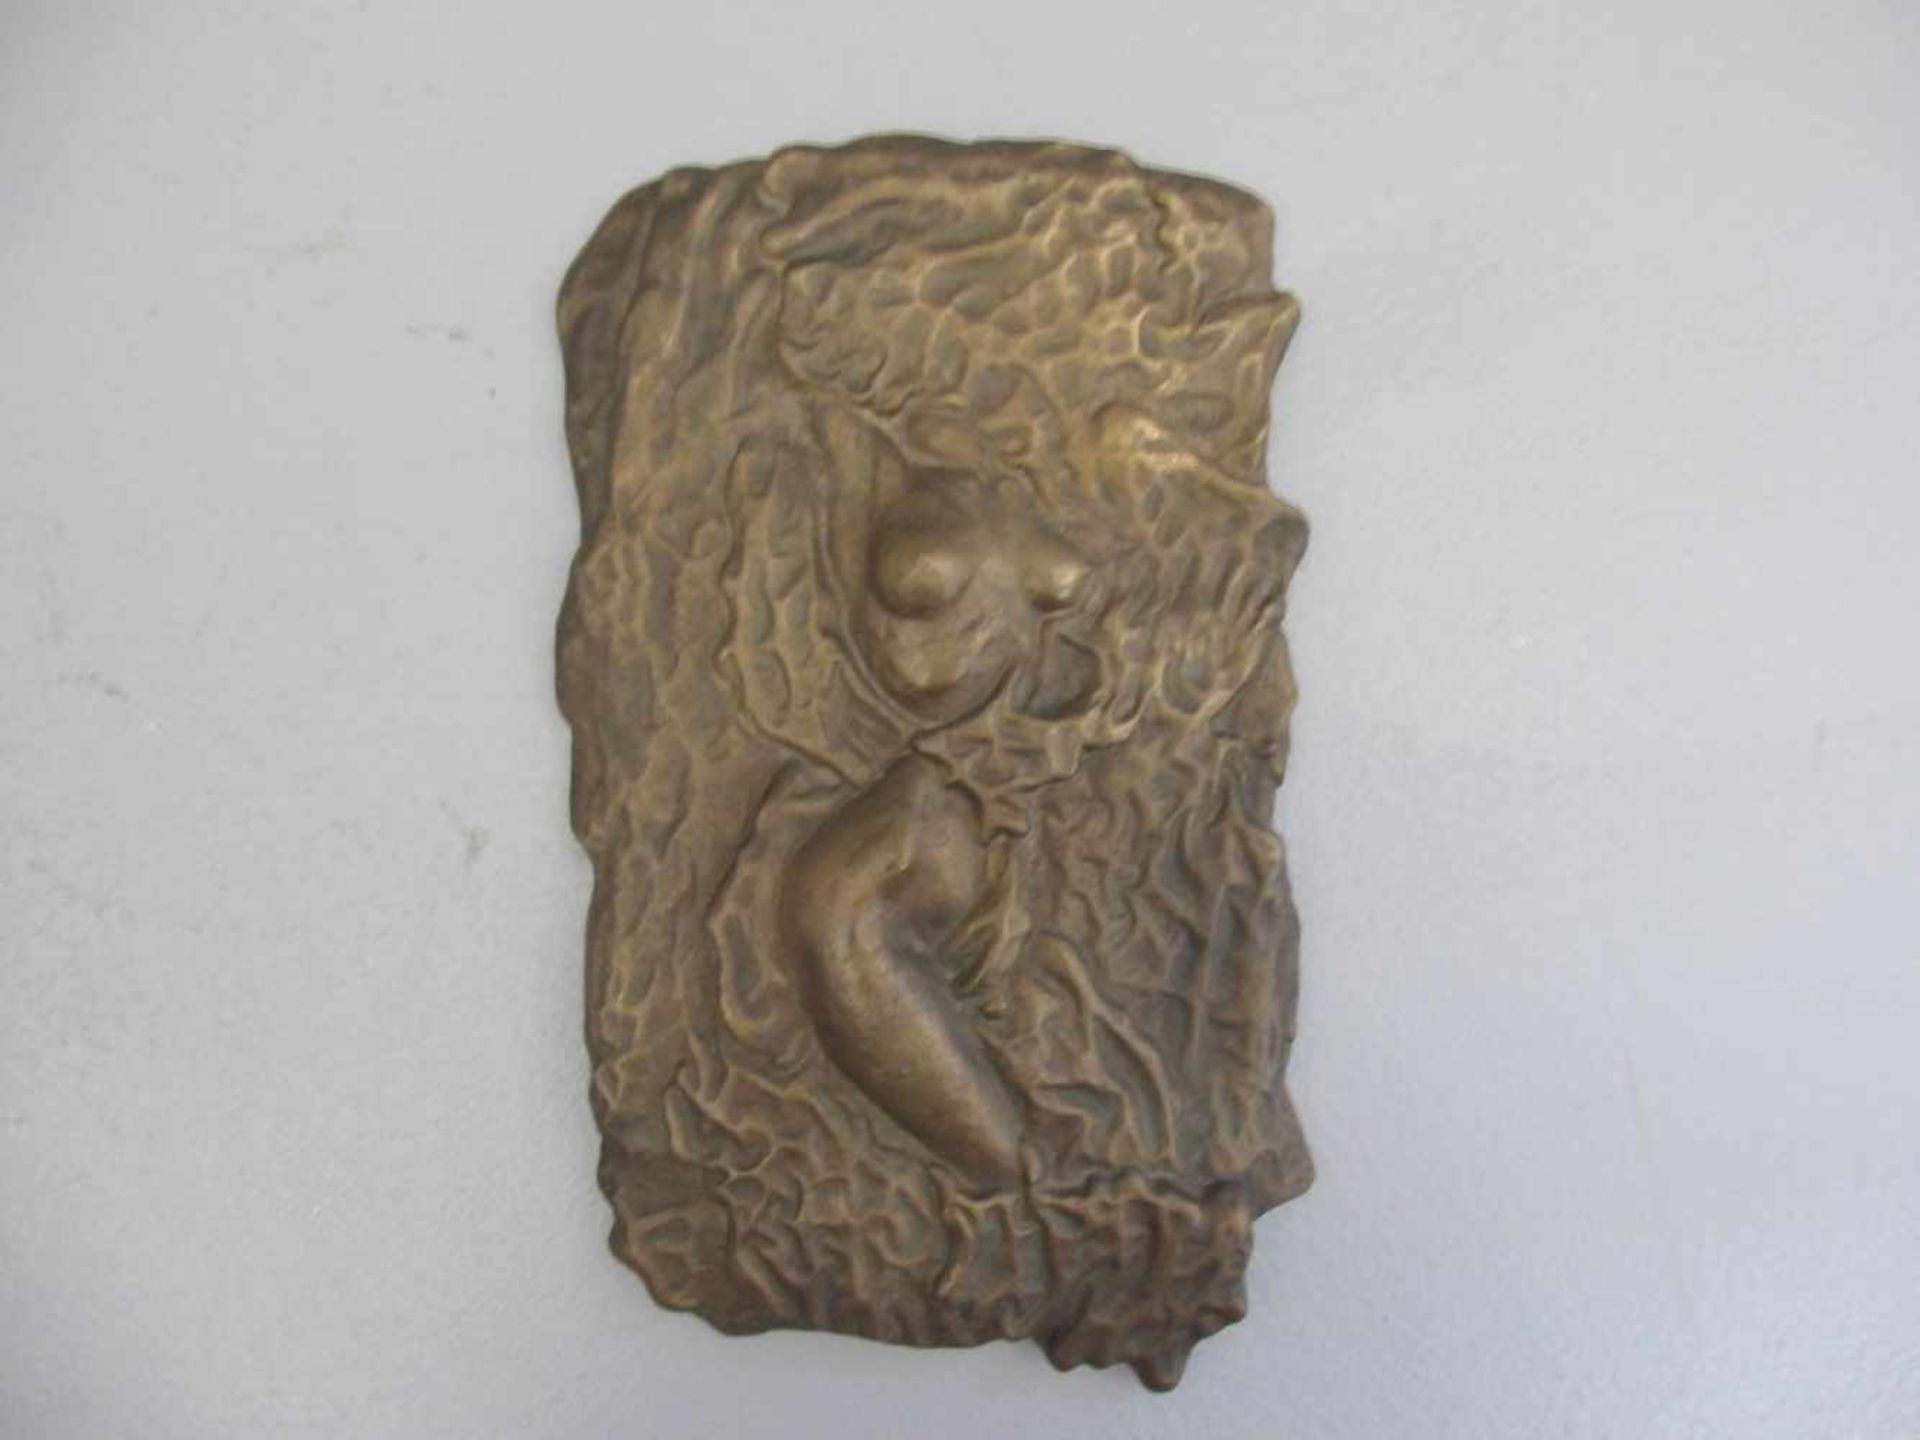 MÓDY, PÉTER (geb. 1965 in Debrecen/Ungarn), Relief: "Lebensfreude", Bronze, hellbraun patiniert. - Bild 2 aus 3